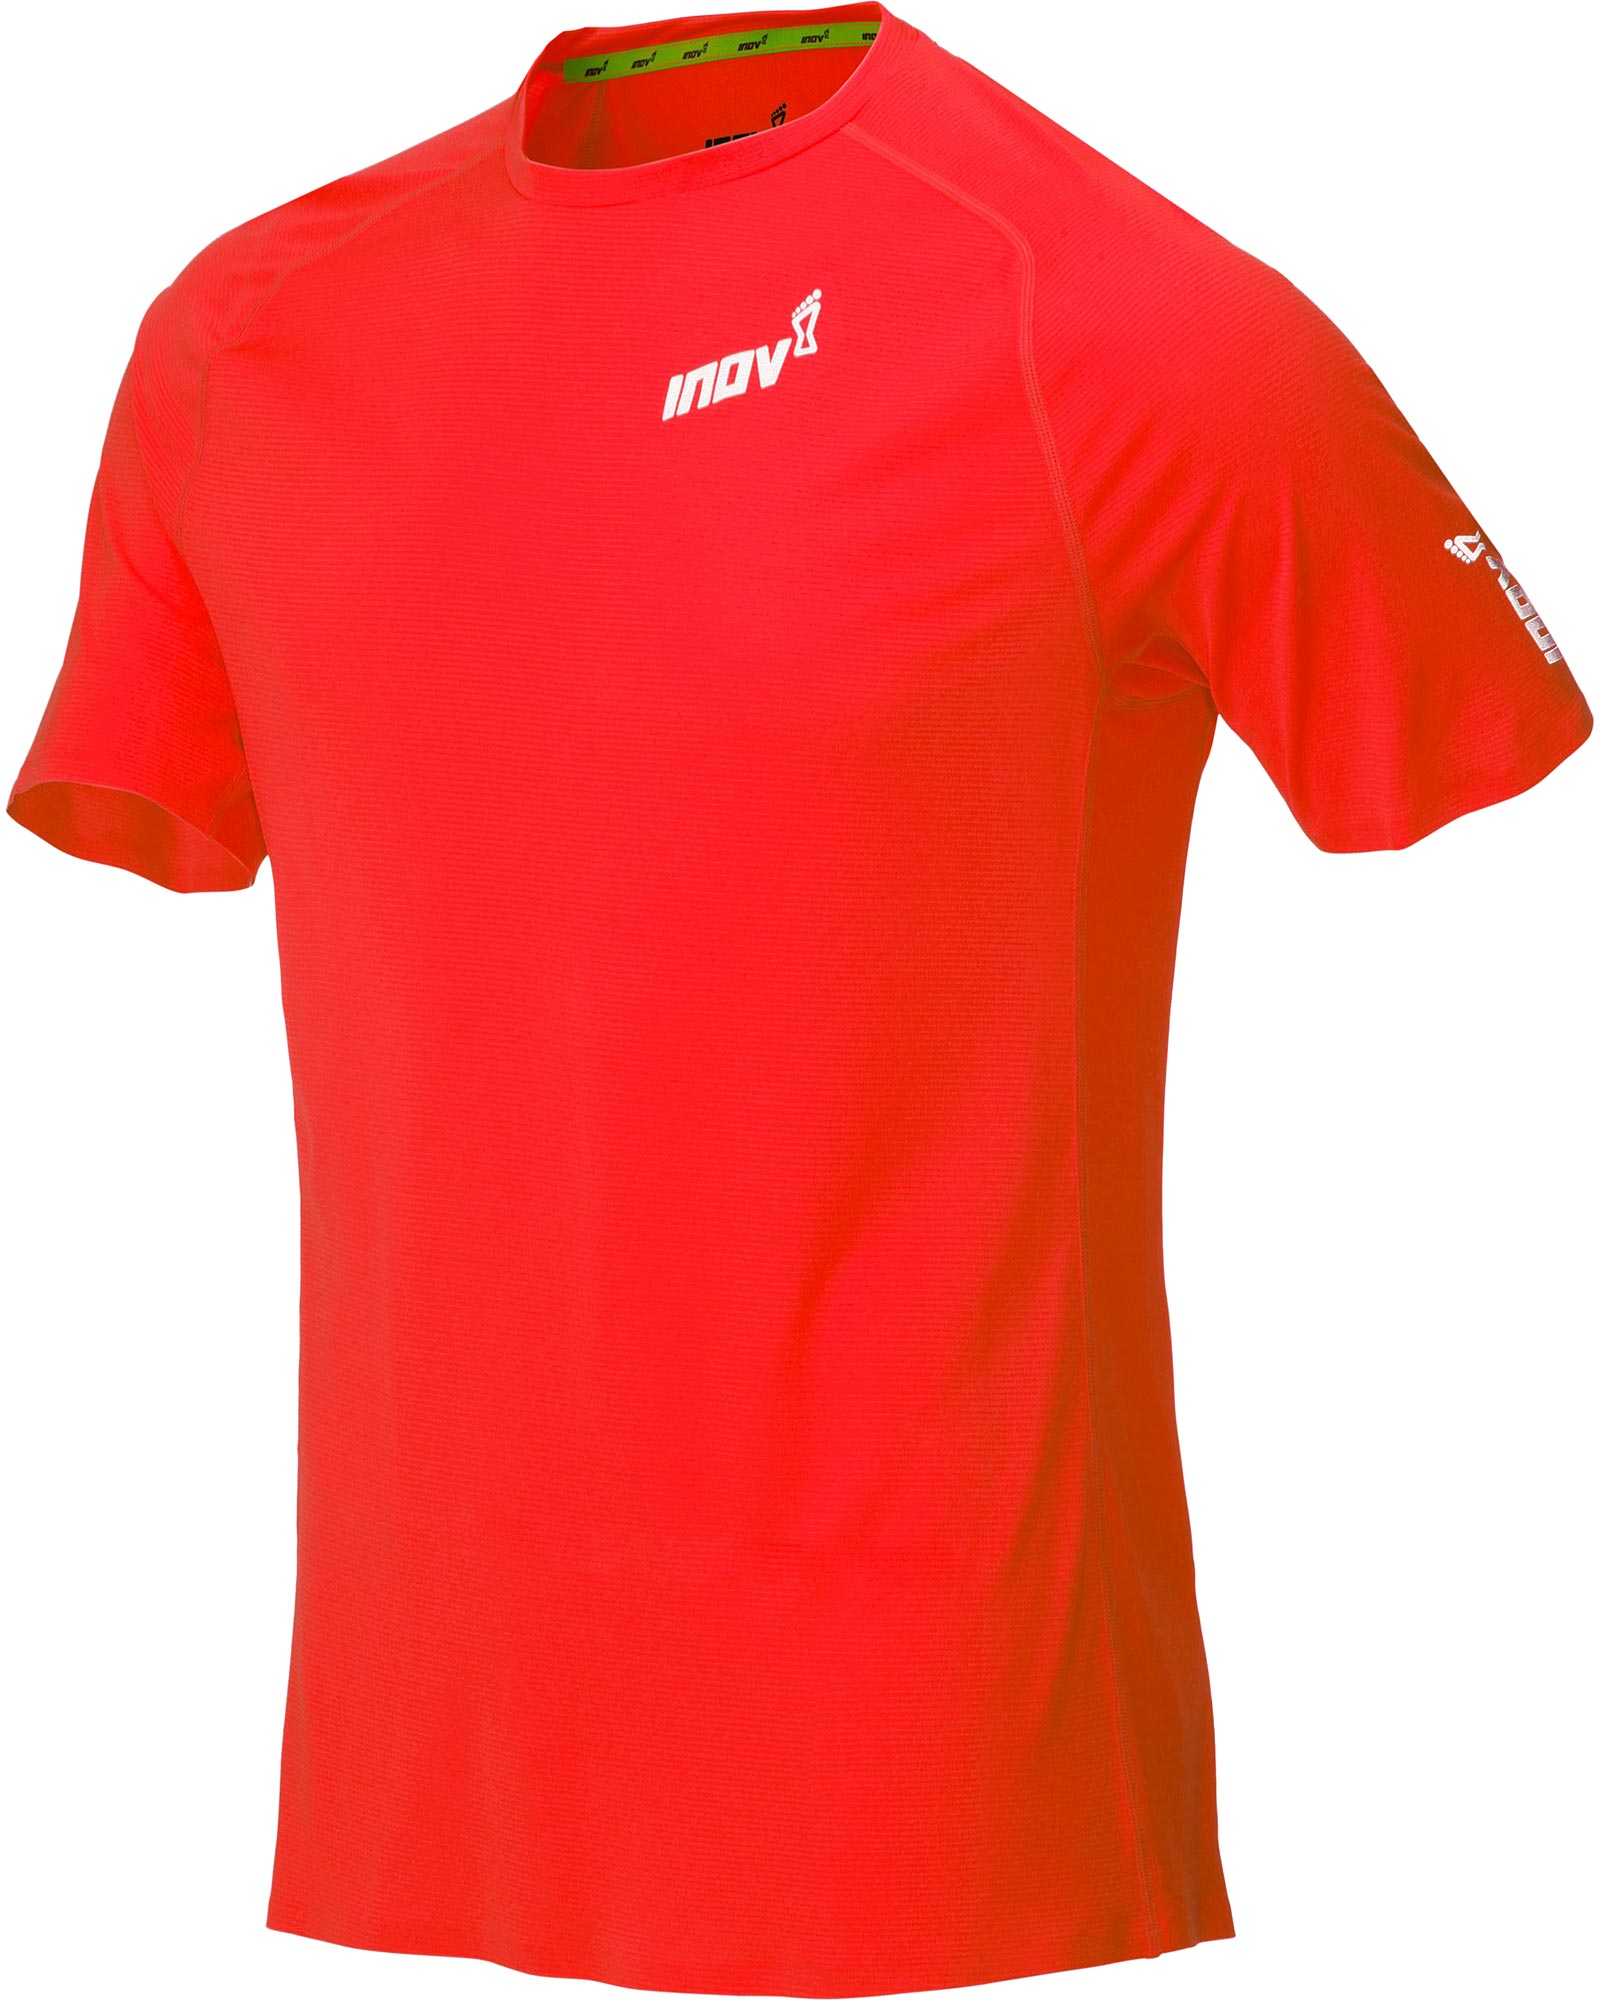 Inov 8 Base Elite Men’s T Shirt - Red S